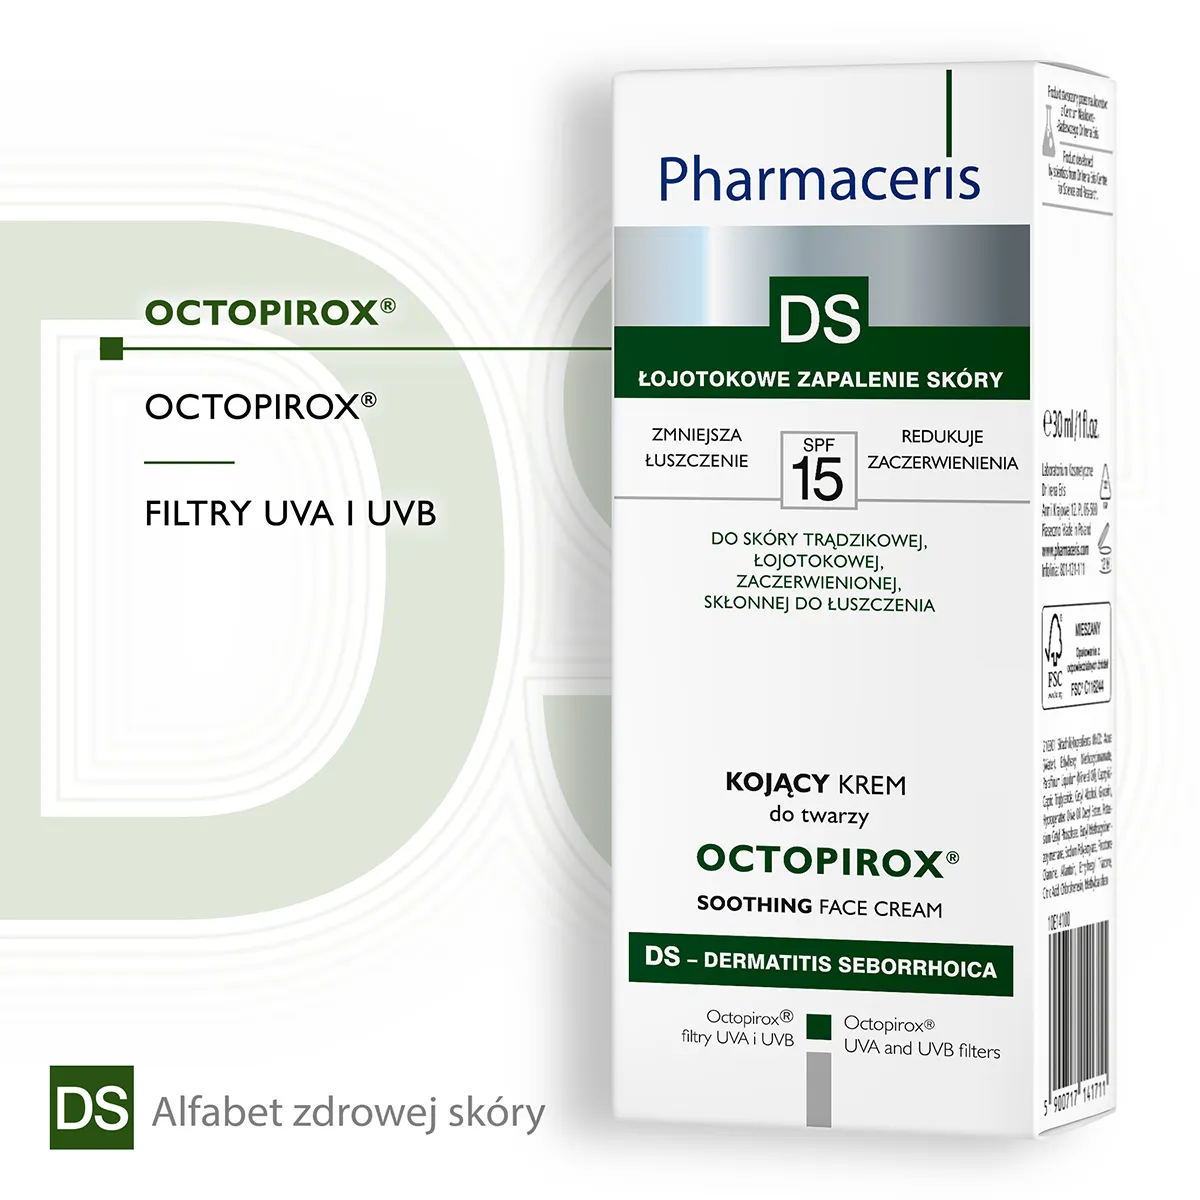 Pharmaceris DS Octopirox - kojący krem do twarzy SPF 15, 30 ml 